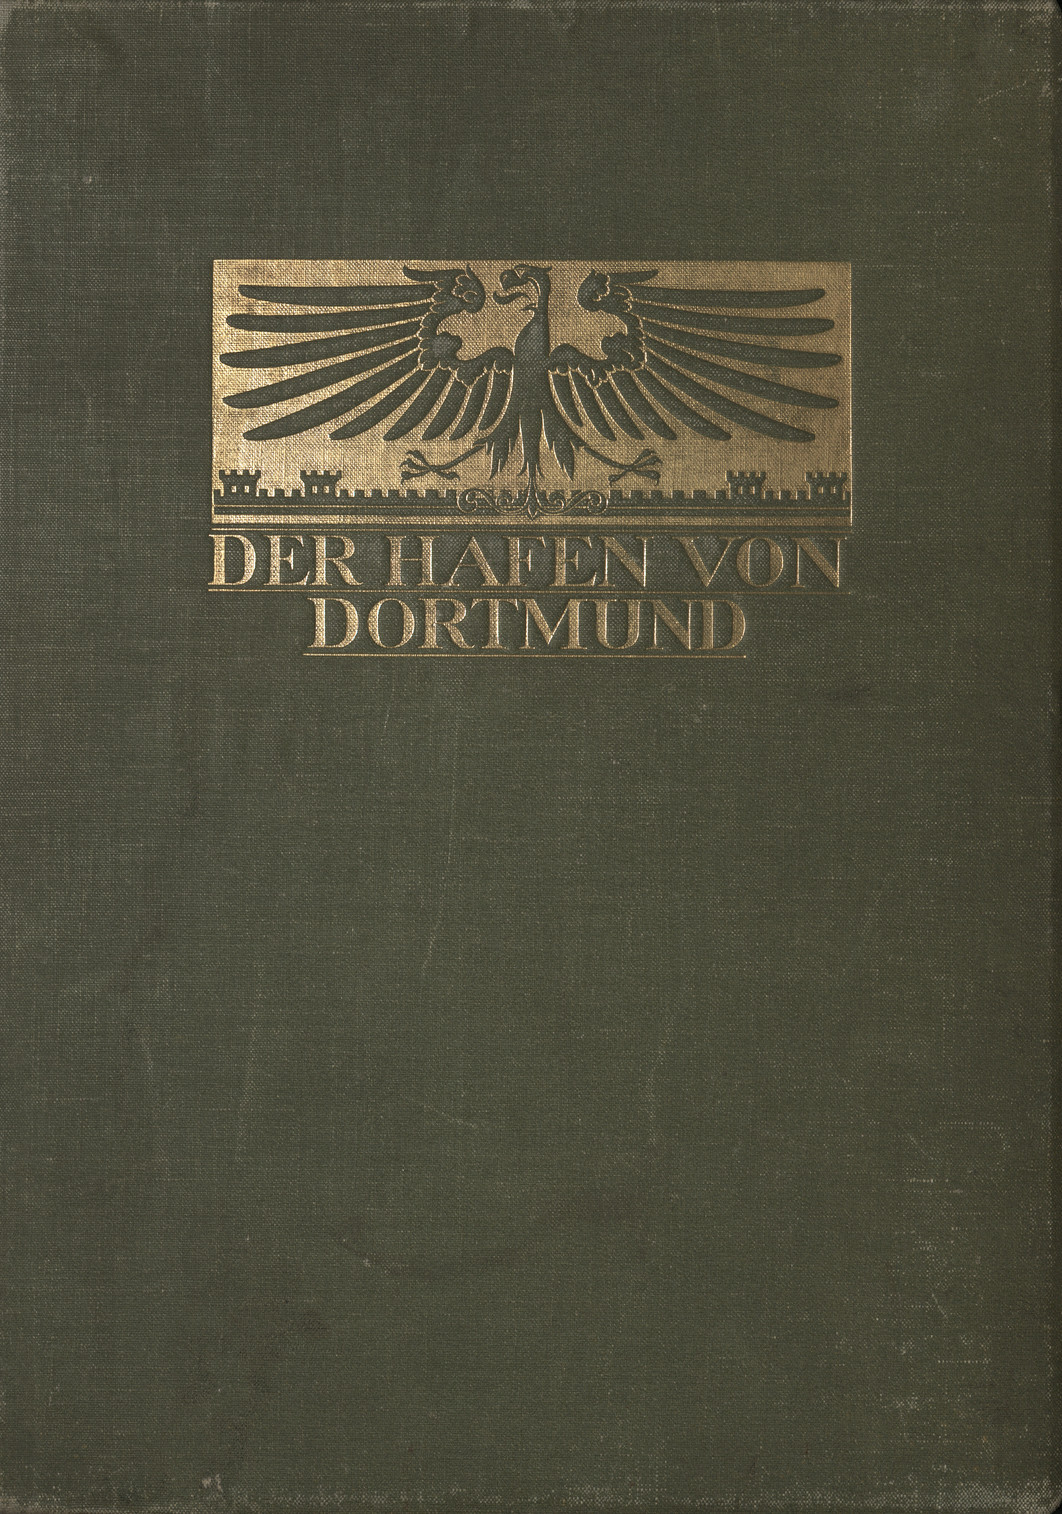 Der Hafen von Dortmund : Denkschrift zur Feier der Hafeneinweihung am 11. Aug. 1899